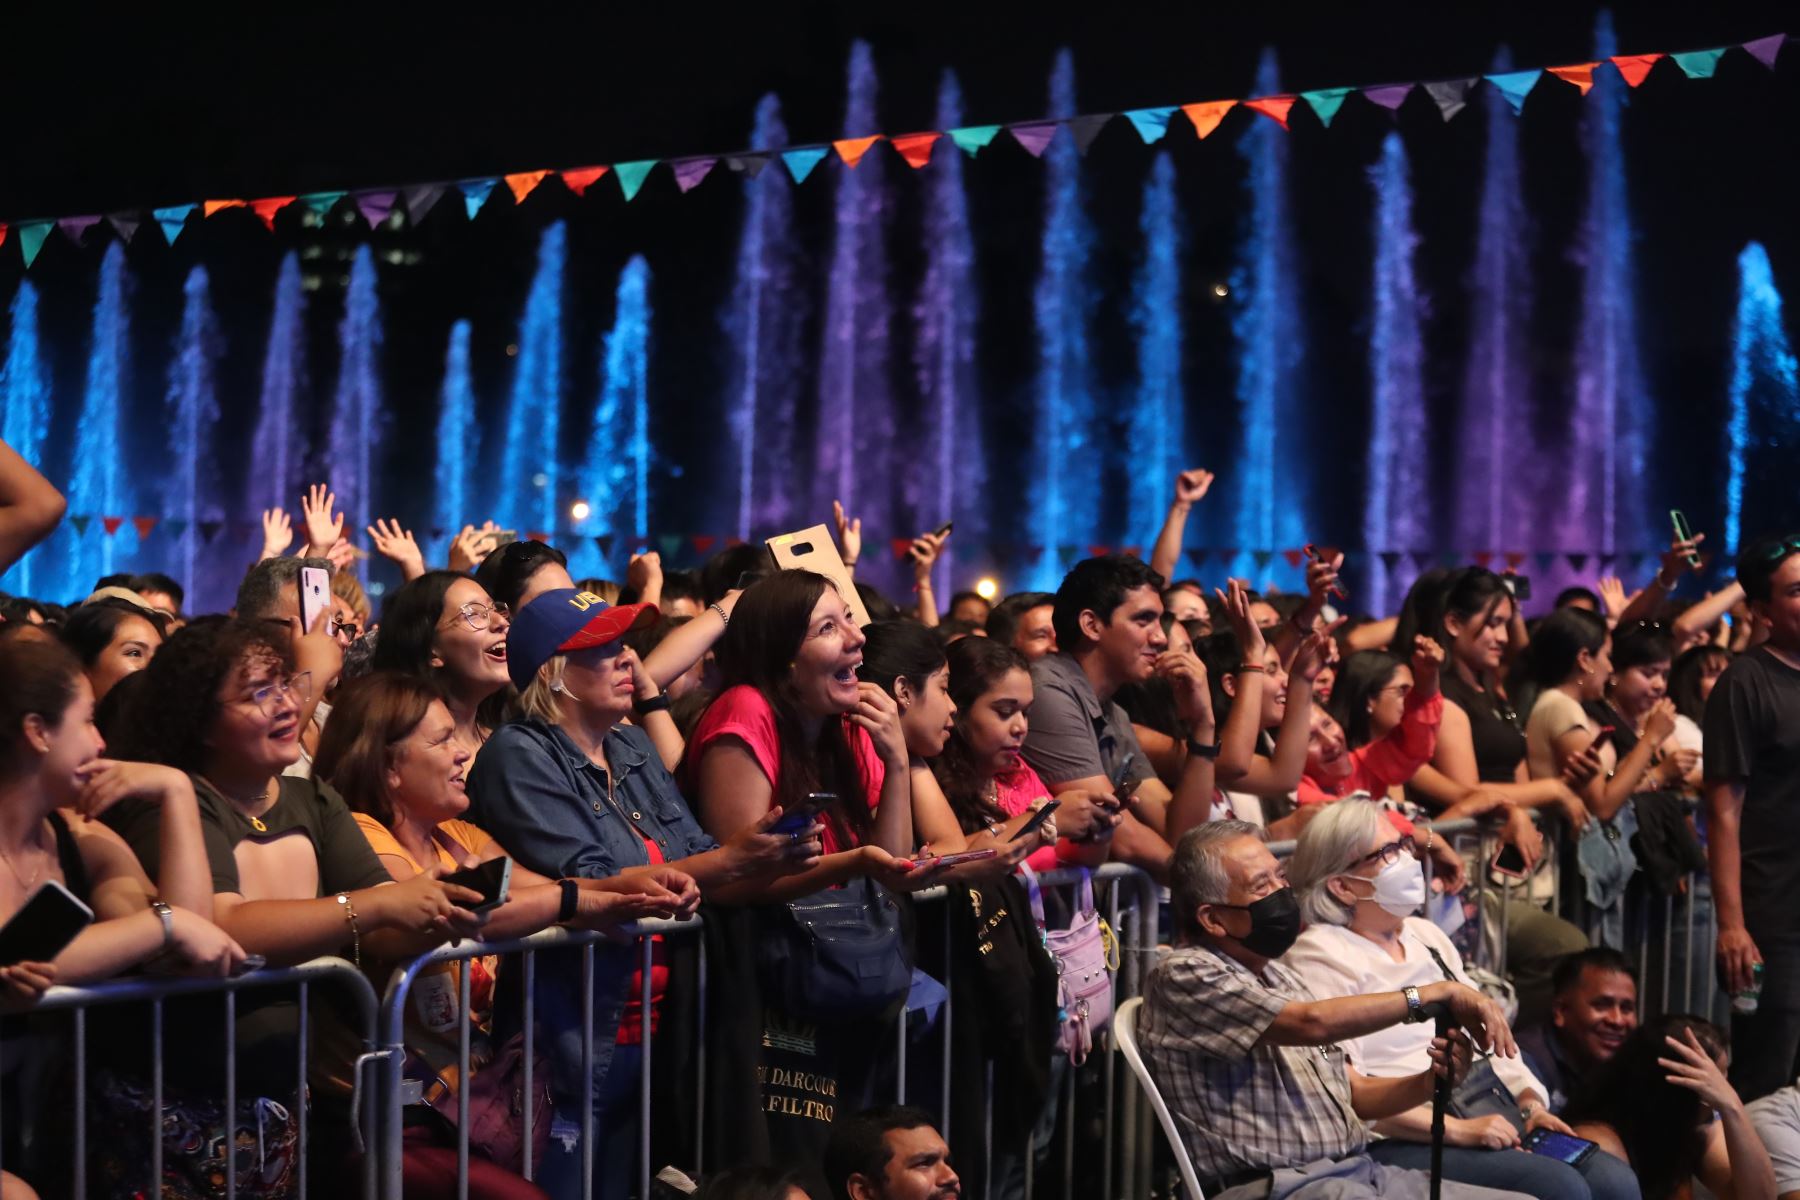 Por el inicio del mes de los carnavales la Municipalidad de Lima ofreció un concierto de Daniela Darcourt en el ciurcuito mágico del agua. Este espectáculo forma parte de las diversas actividades que ofrecerá en febrero la municipalidad, promoviendo el entretenimiento, la música y la alegría entre las familias.

Foto: ANDINA/Ricardo Cuba